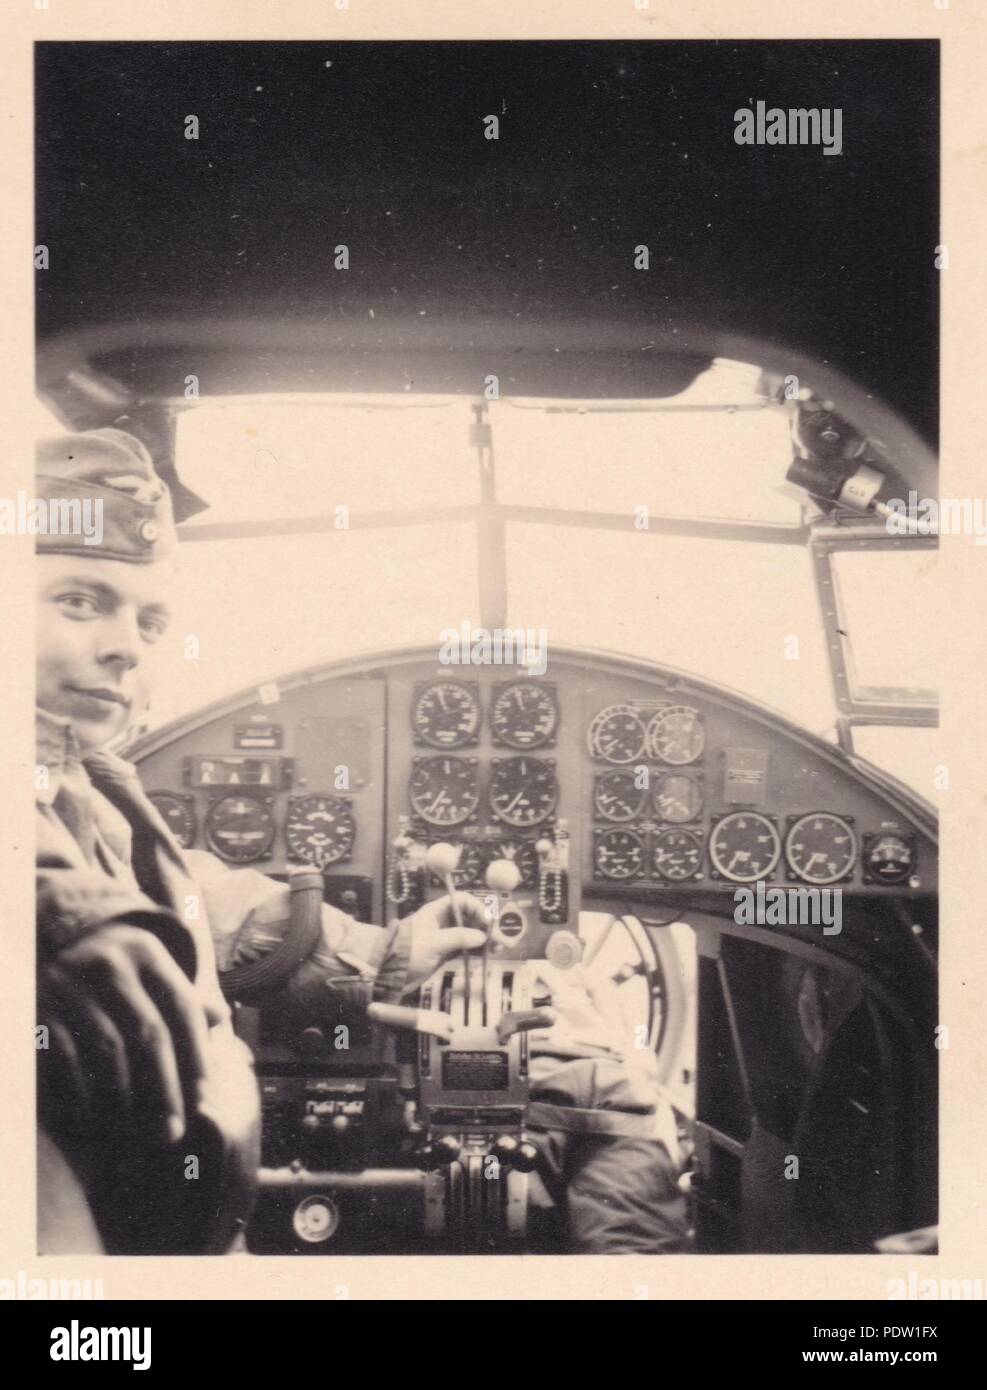 Bild aus dem Fotoalbum von Oberfeldwebel Karl gendner von 1. Staffel, Kampfgeschwader 40: Karl Gendner sitzt in den Pilotensitz eines Heinkel He 111 E-1, während seine Beobachter, Steiner, stellt in der Nase des Flugzeugs im Jahre 1938. Stockfoto